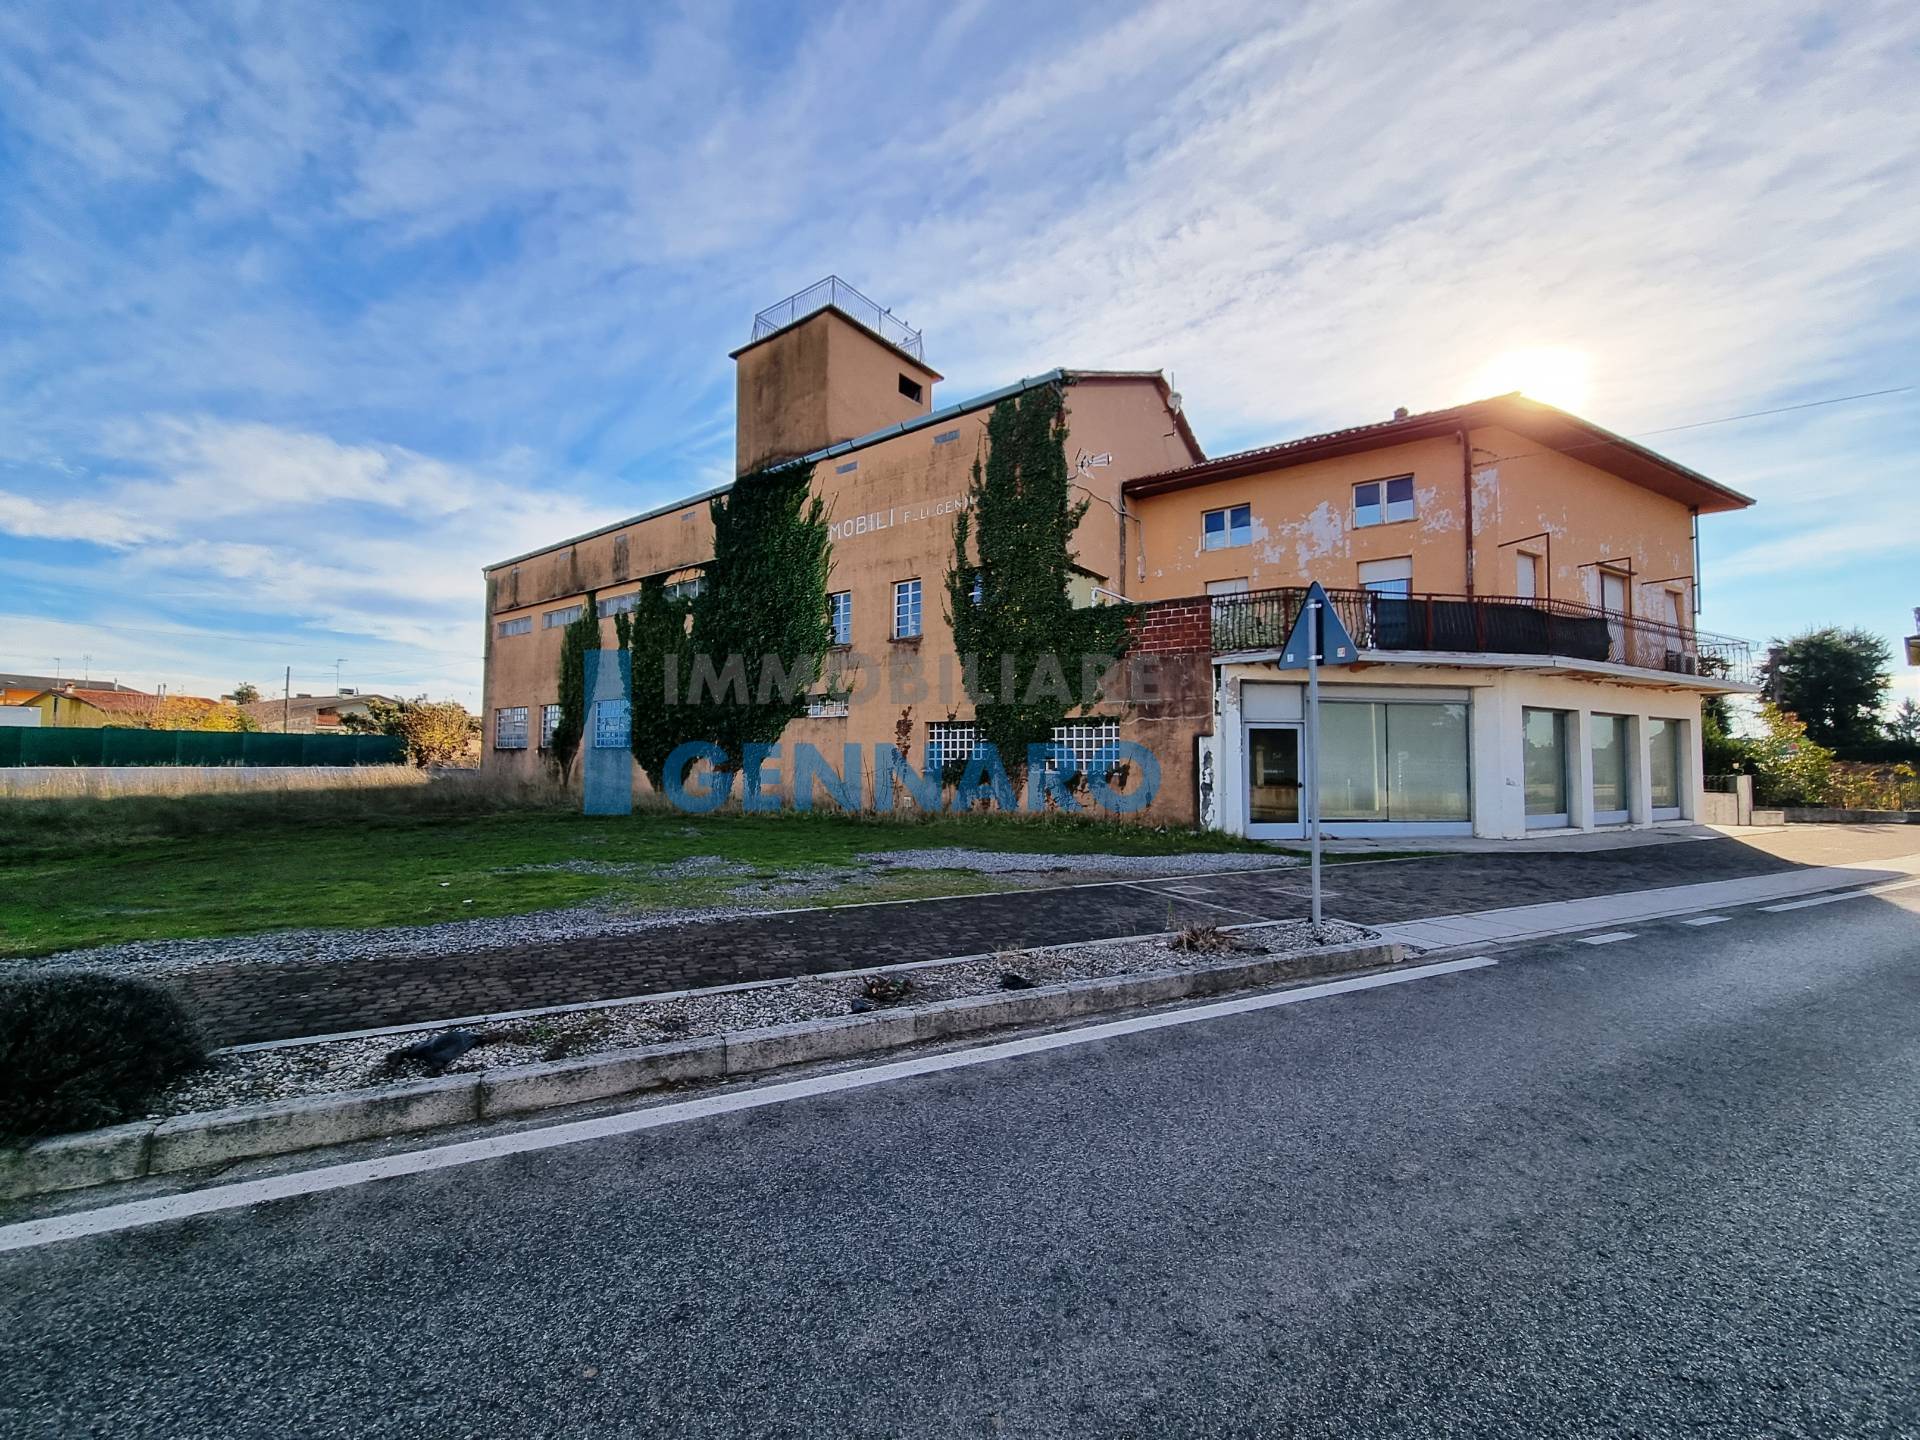 Negozio / Locale in vendita a Pozzuolo del Friuli, 9999 locali, zona Zona: Zugliano, prezzo € 200.000 | CambioCasa.it